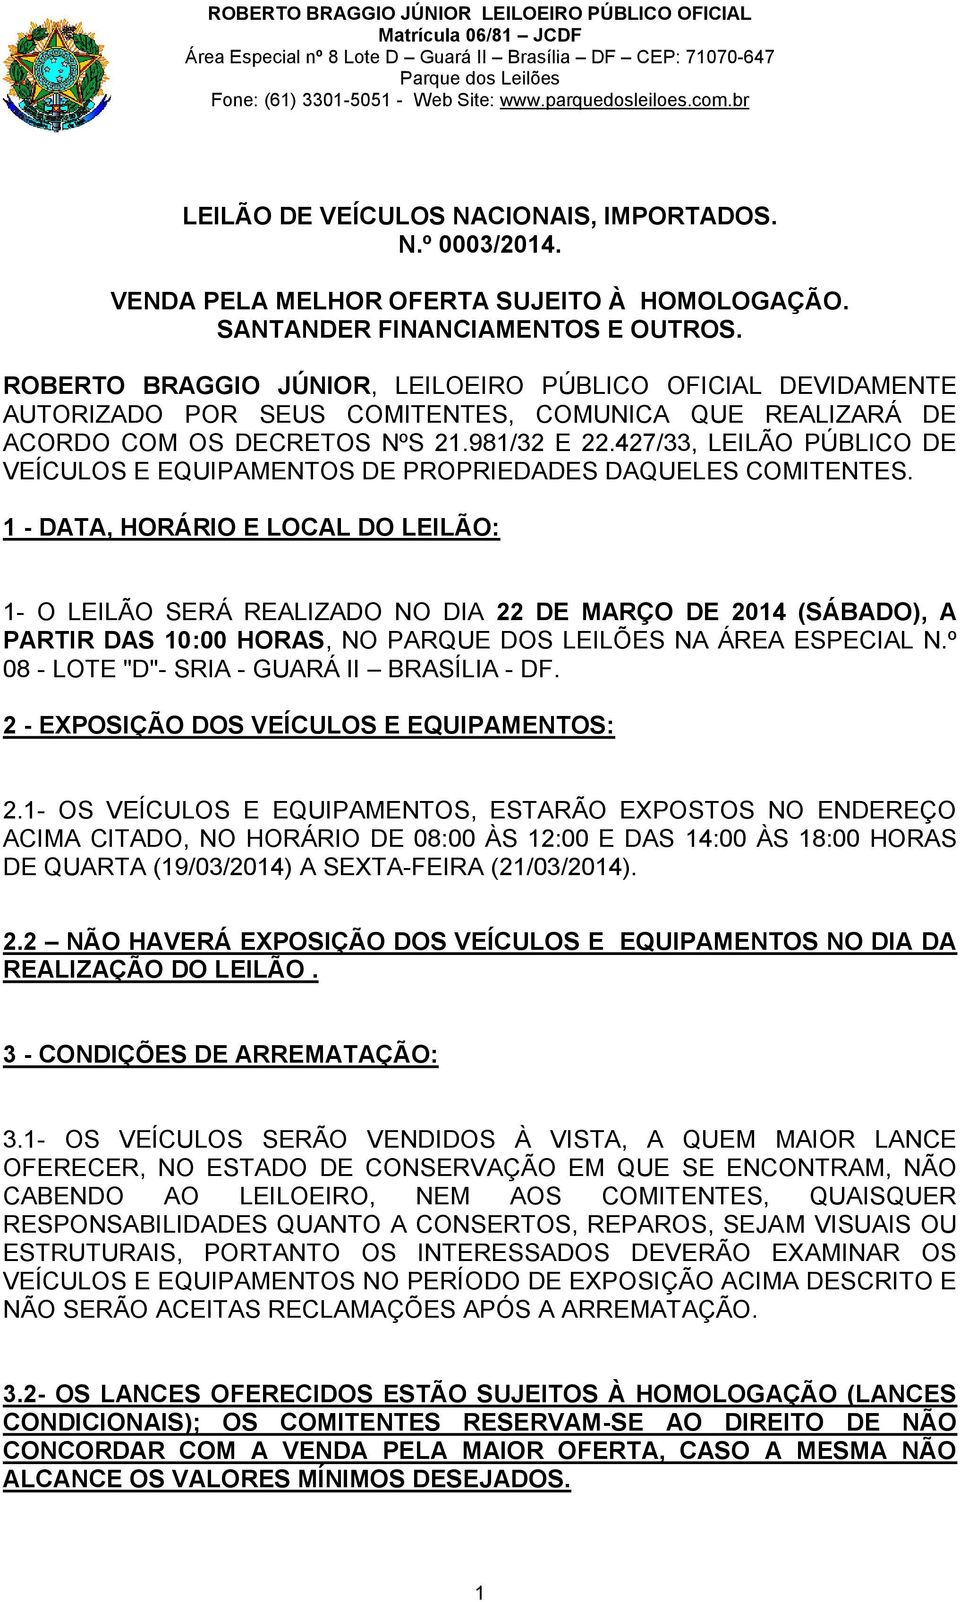 427/33, LEILÃO PÚBLICO DE VEÍCULOS E EQUIPAMENTOS DE PROPRIEDADES DAQUELES COMITENTES.